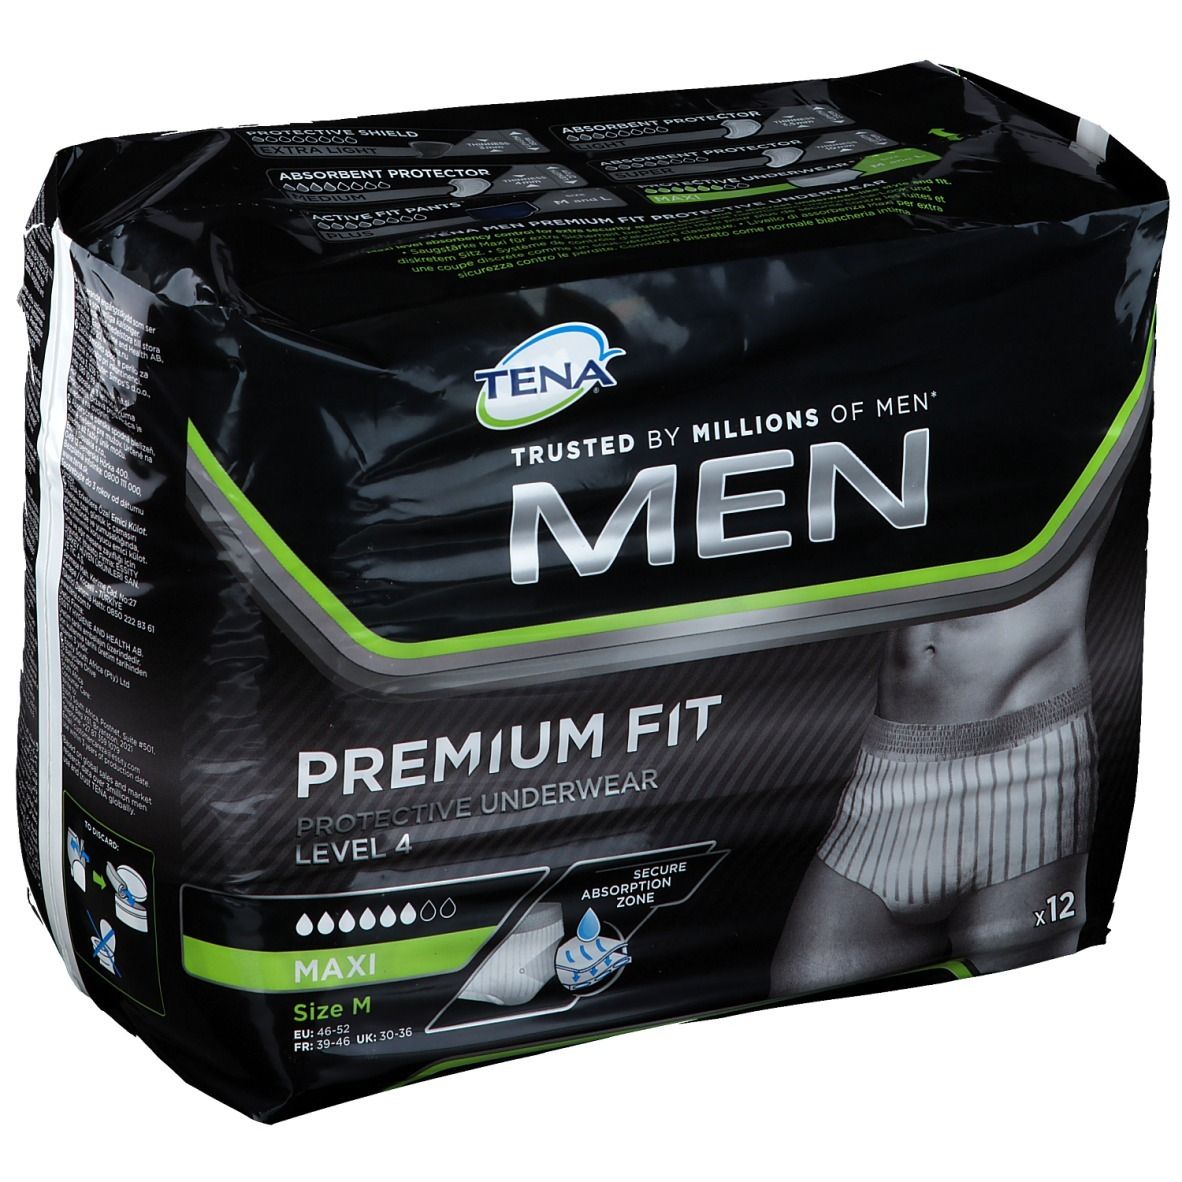 TENA® MEN PREMIUM FIT Protective Underwear Level 4 Medium - shop ...